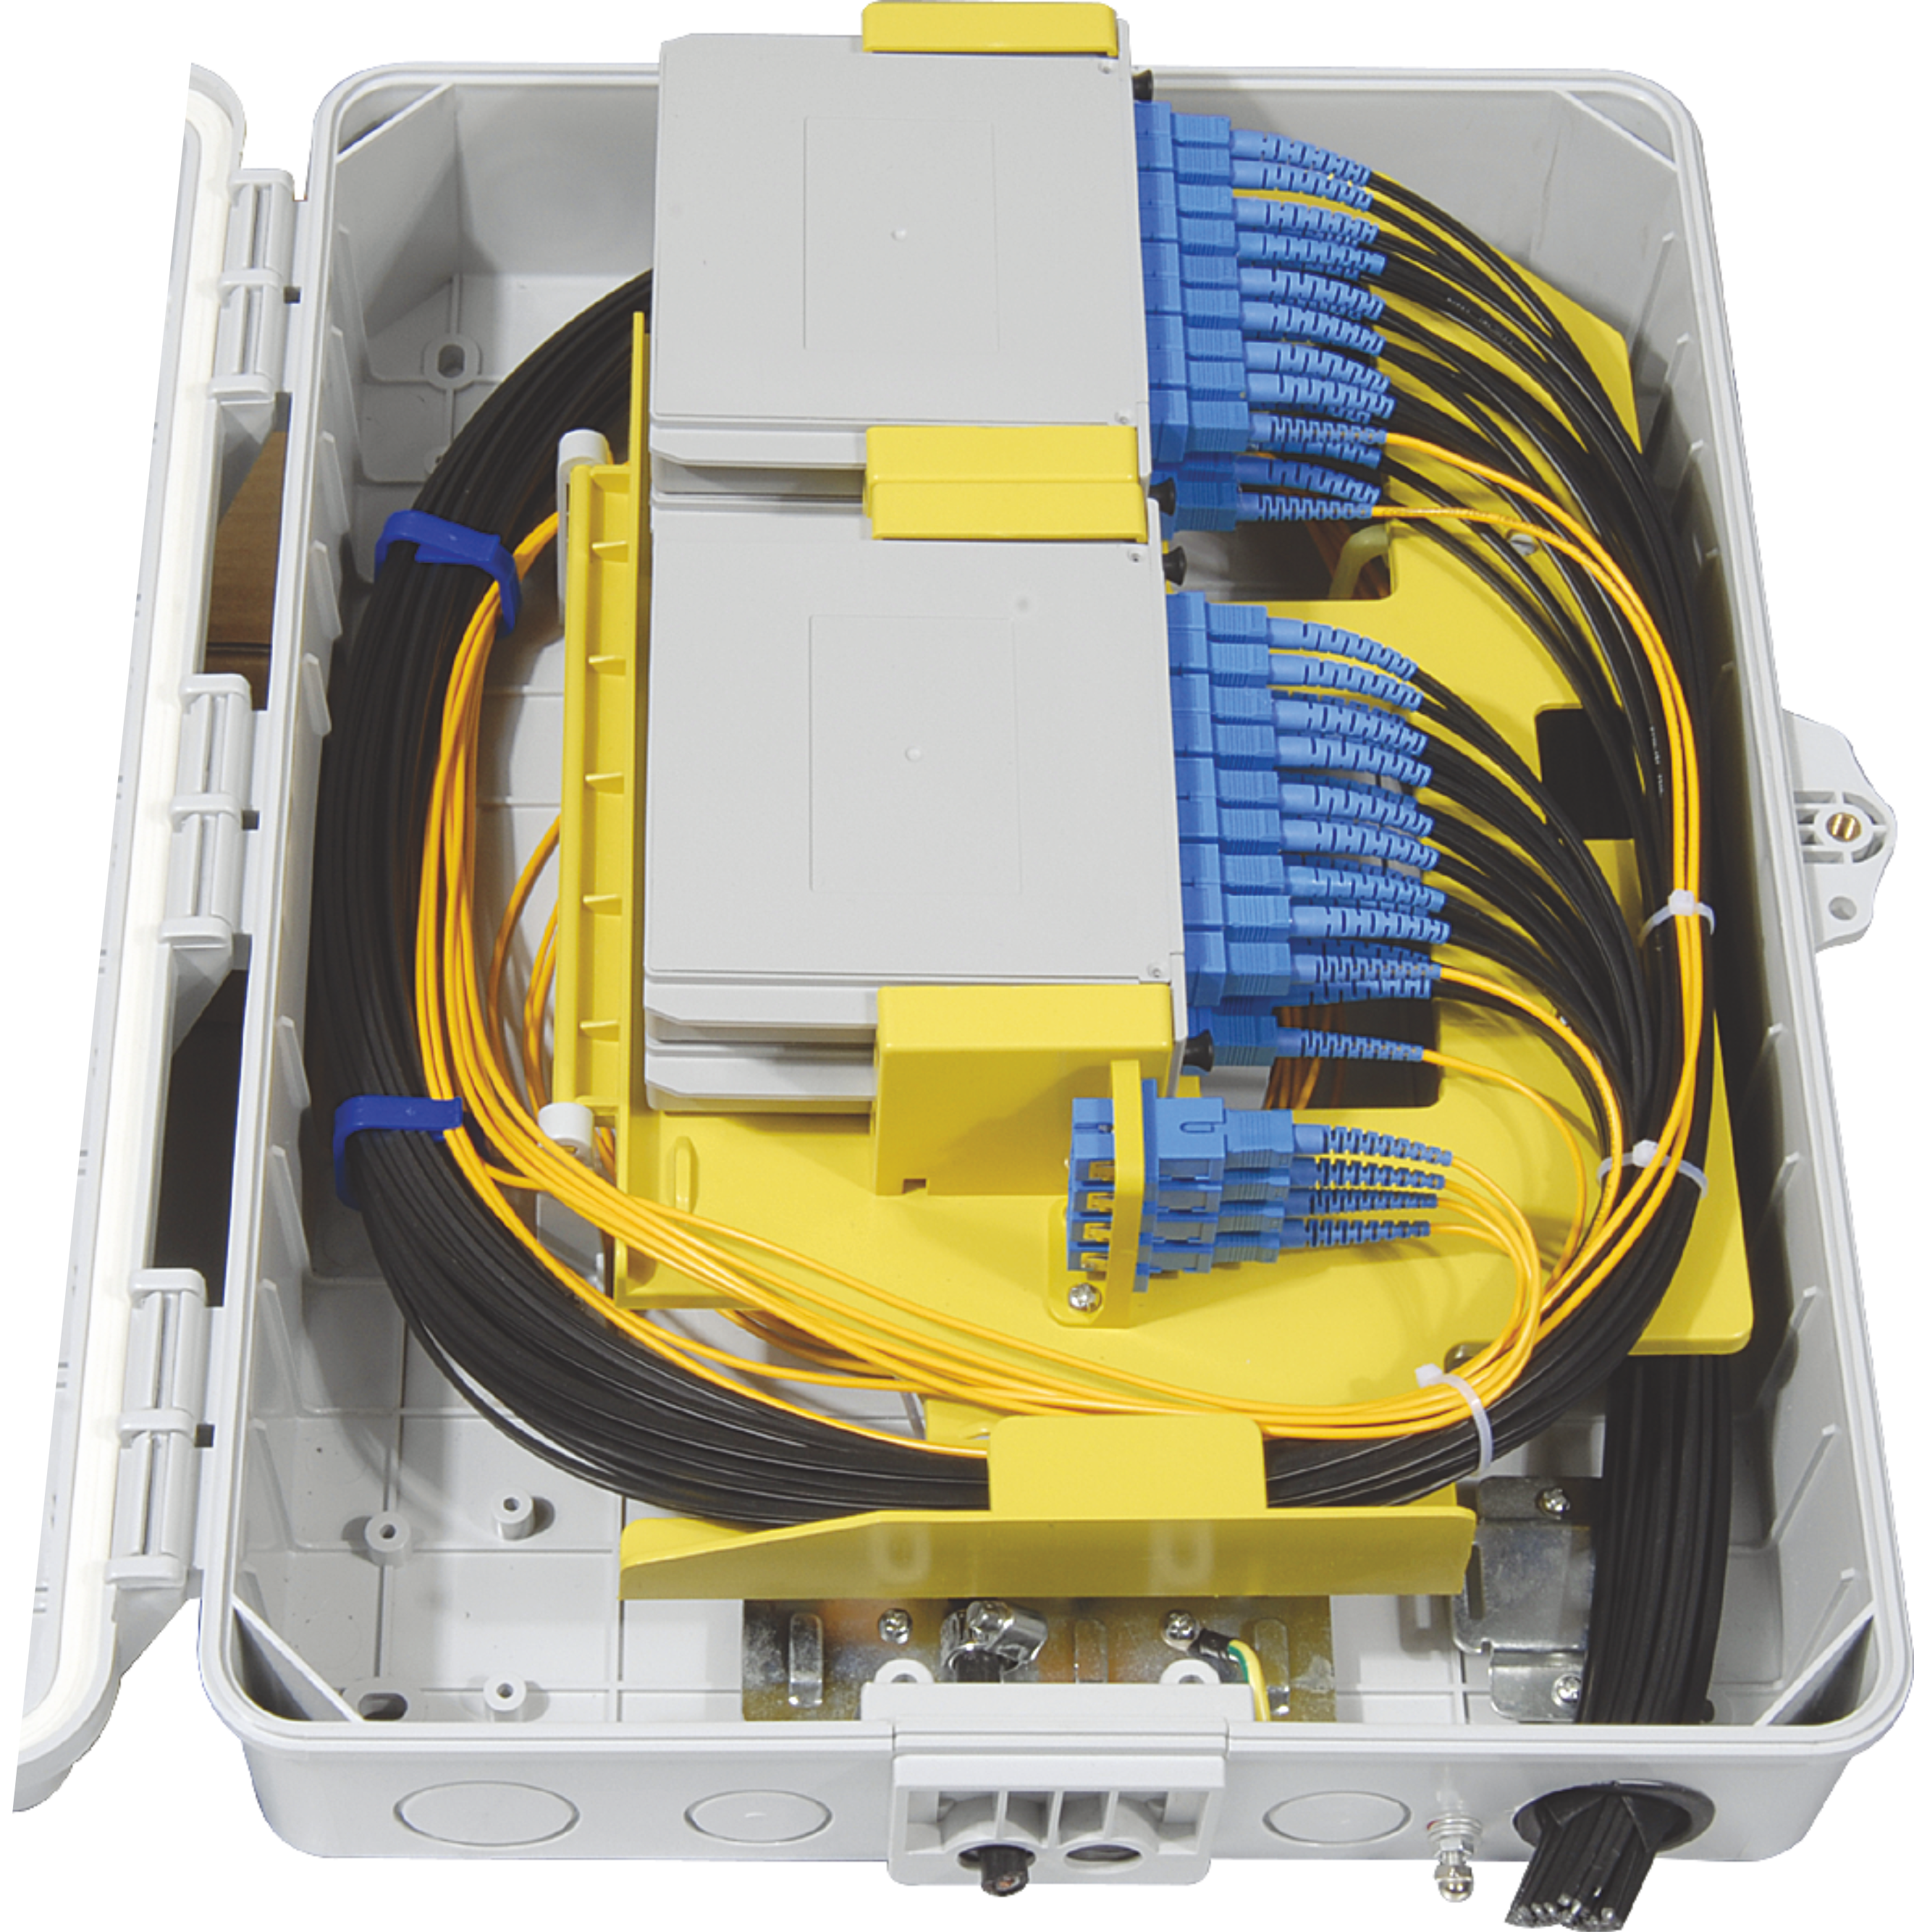 FOSB-32-A Fiber Optical Splitter Box 32 Cores